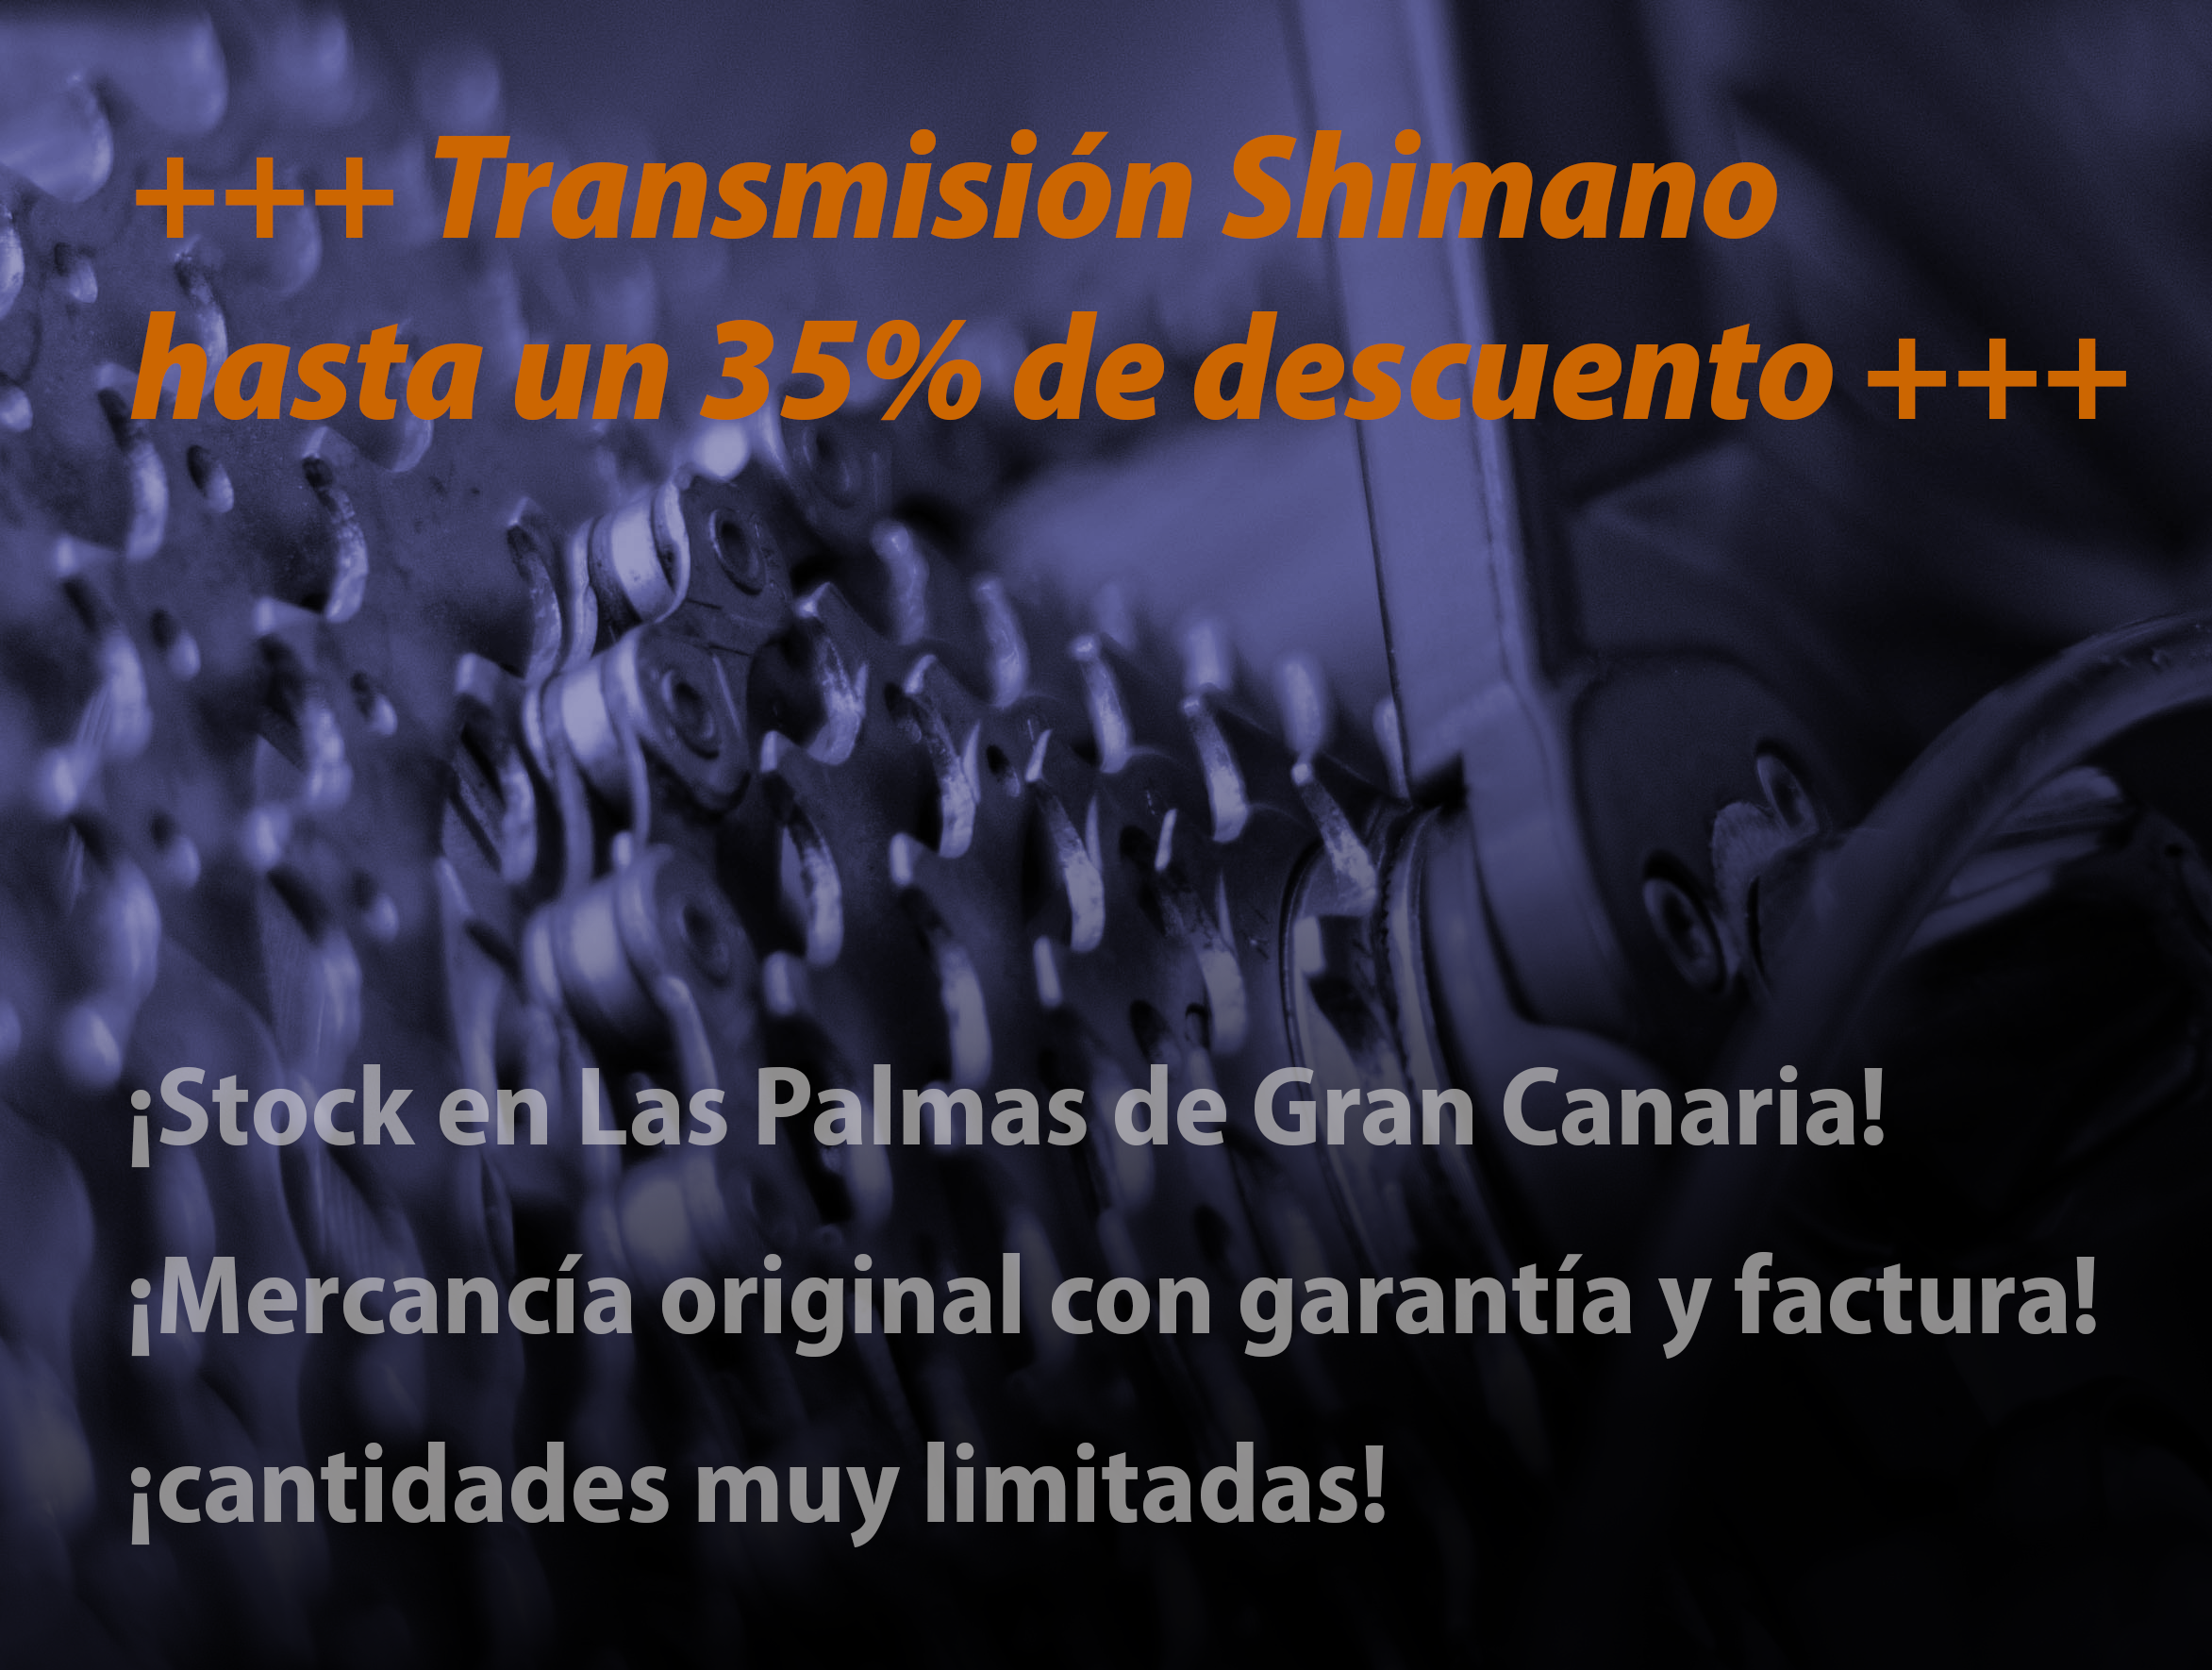 Ofertas Shimano Transmisión en Las Palmas de Gran Canaria